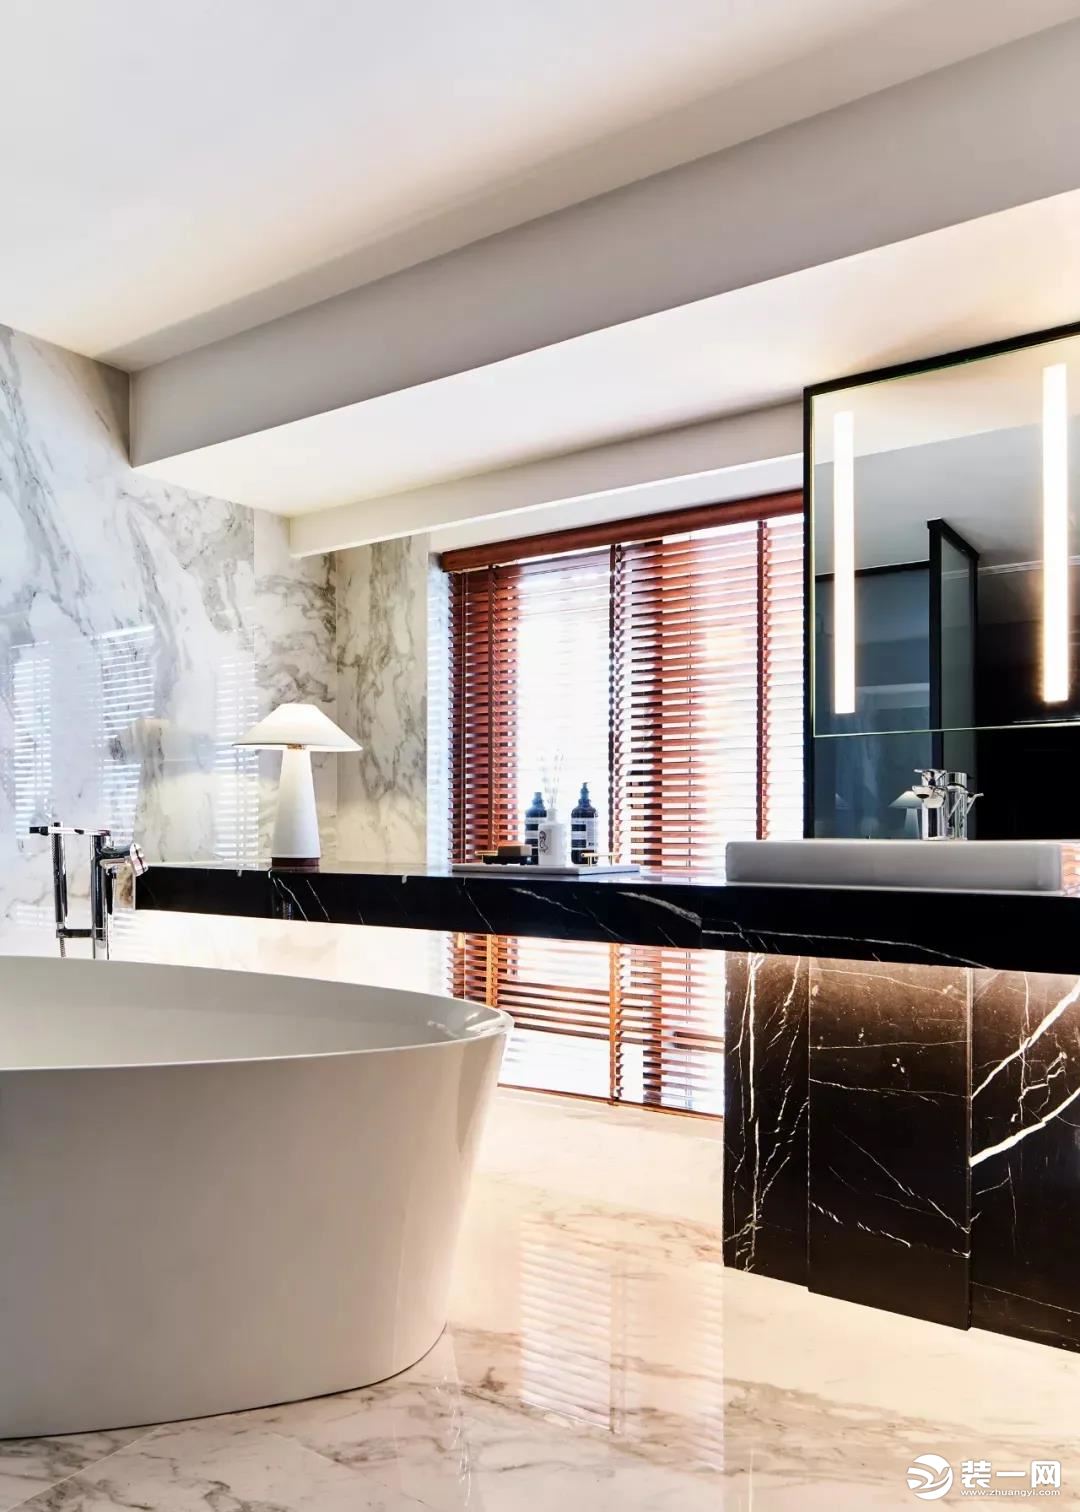 卫生间采用了“调光玻璃”的设计，让淋浴房内的玻璃可以在透明与雾化之间变换，大大的浴缸布置，也让卫浴空